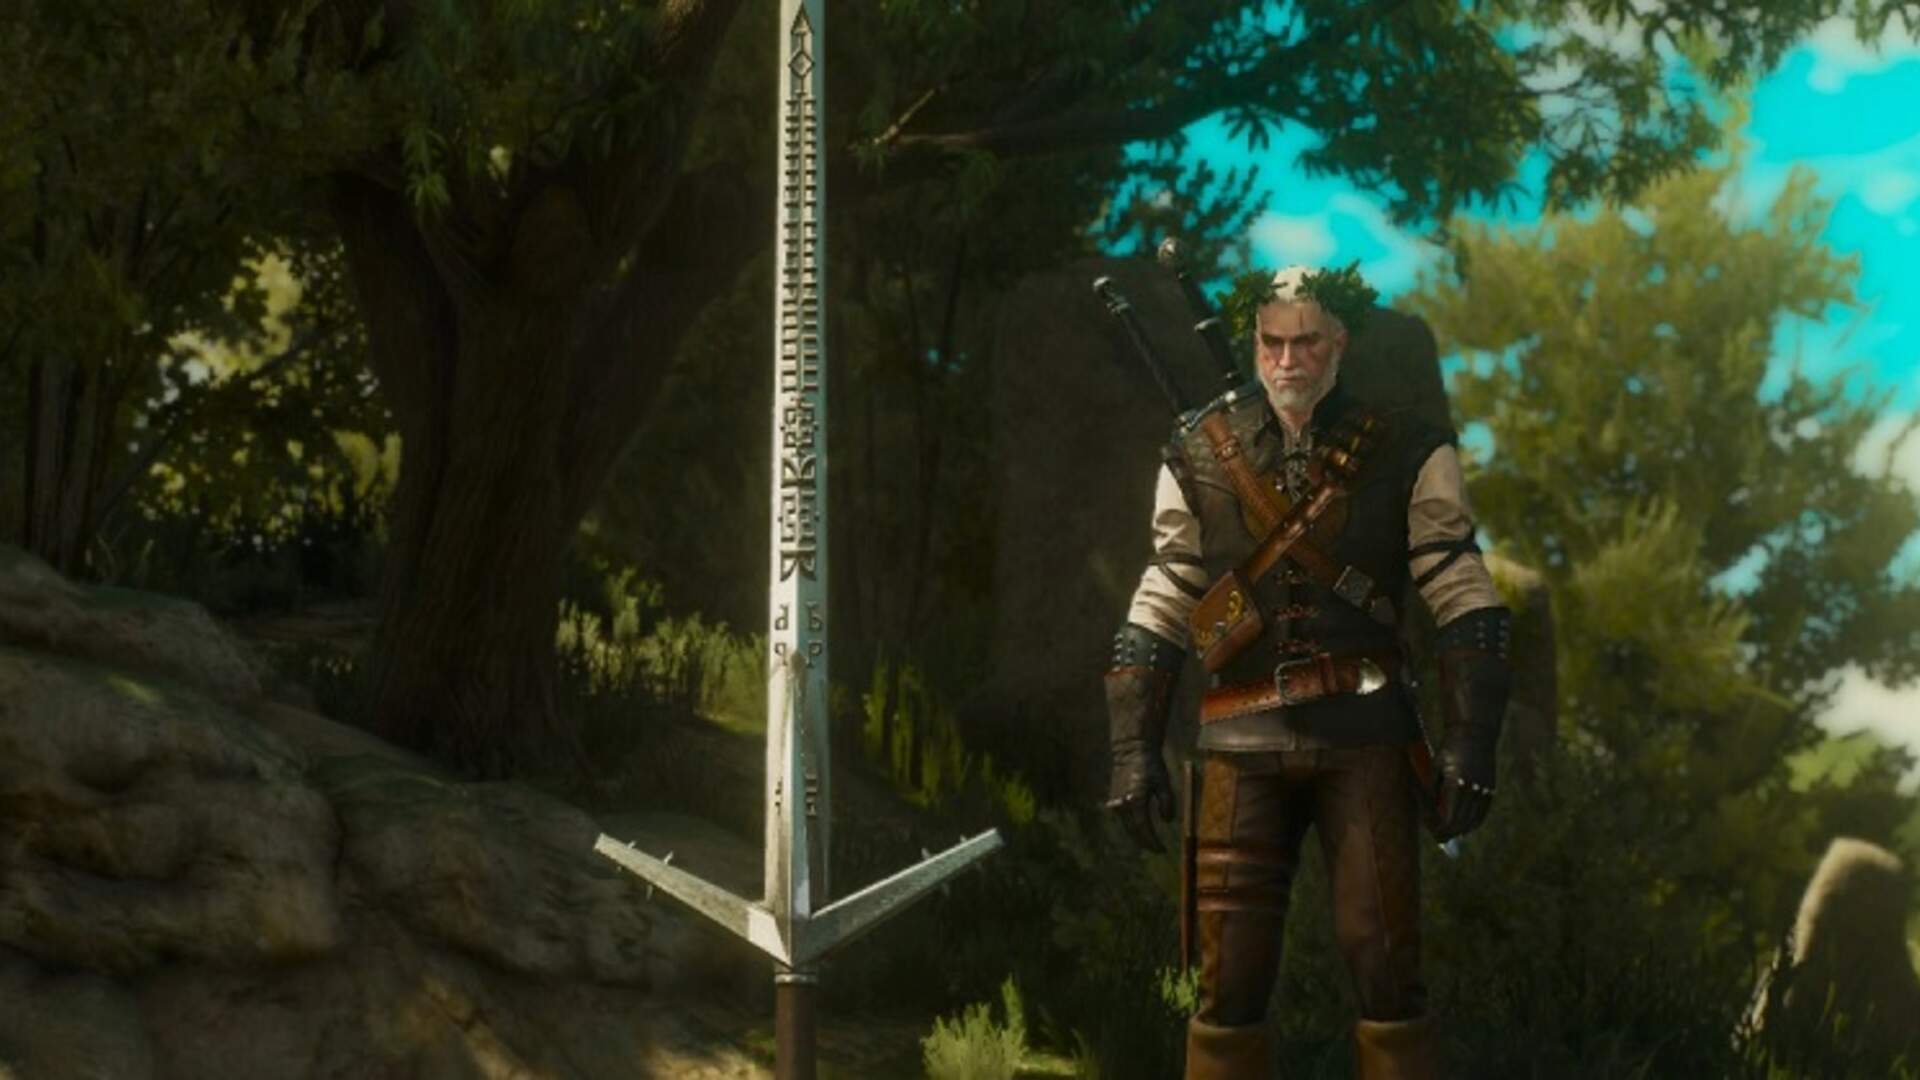 Aerondight - Thanh Kiếm Biểu Tượng Của Geralt Trong Witcher.